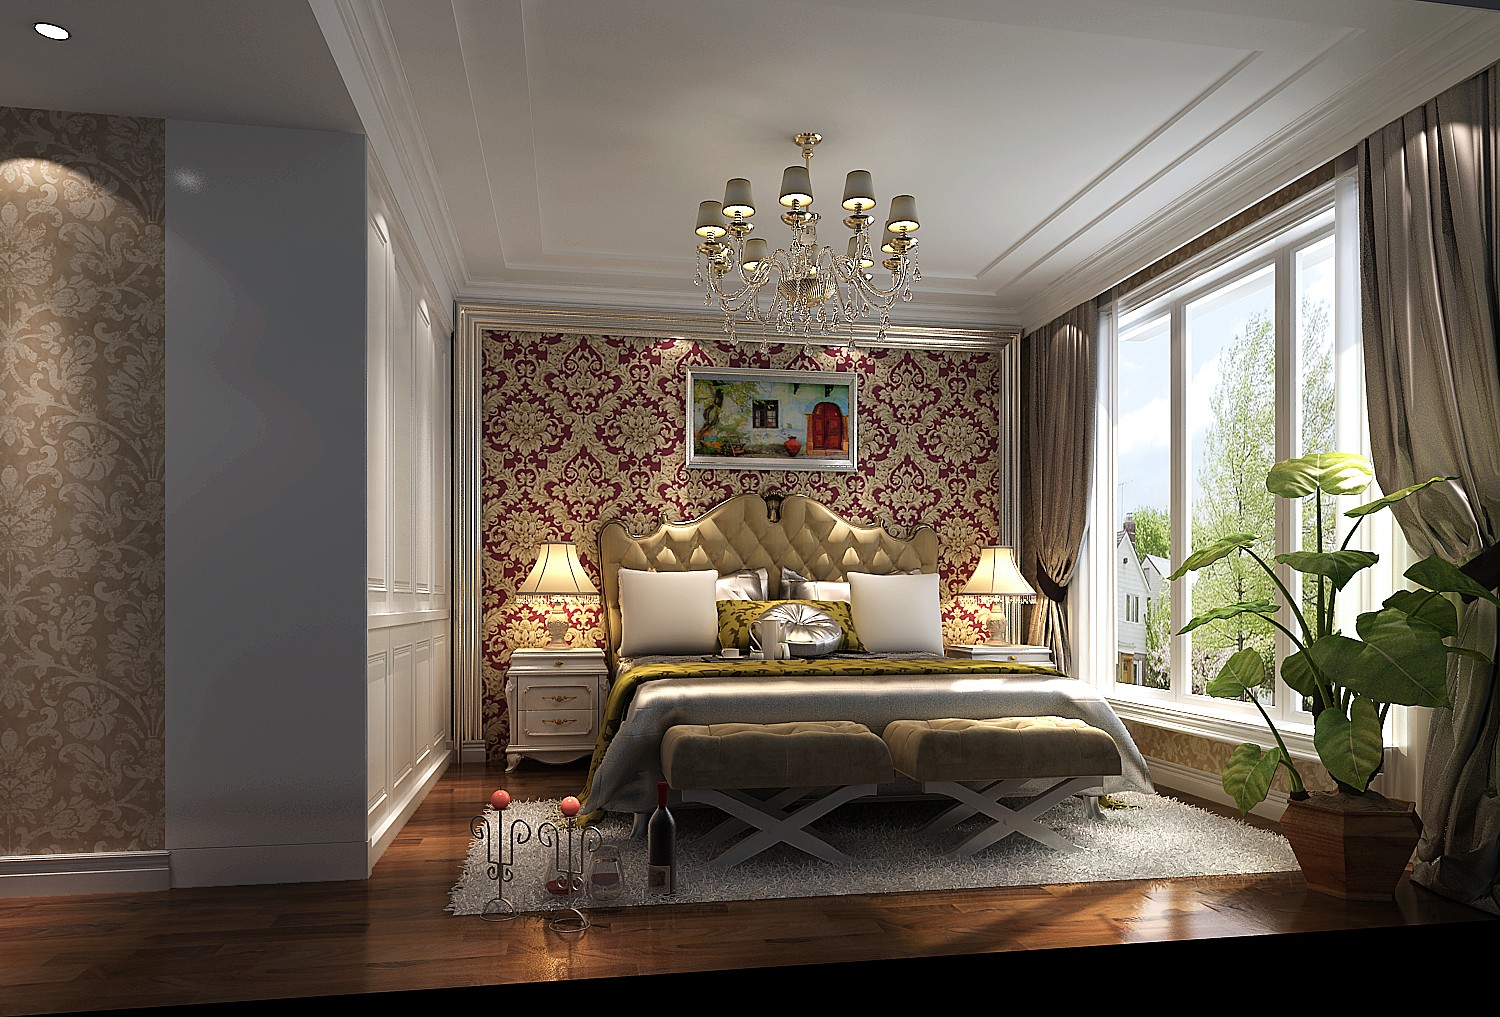 欧式 公寓 美观 温馨 舒适 卧室图片来自北京高度装饰设计王鹏程在天润福熙大道三室二厅欧式风格的分享